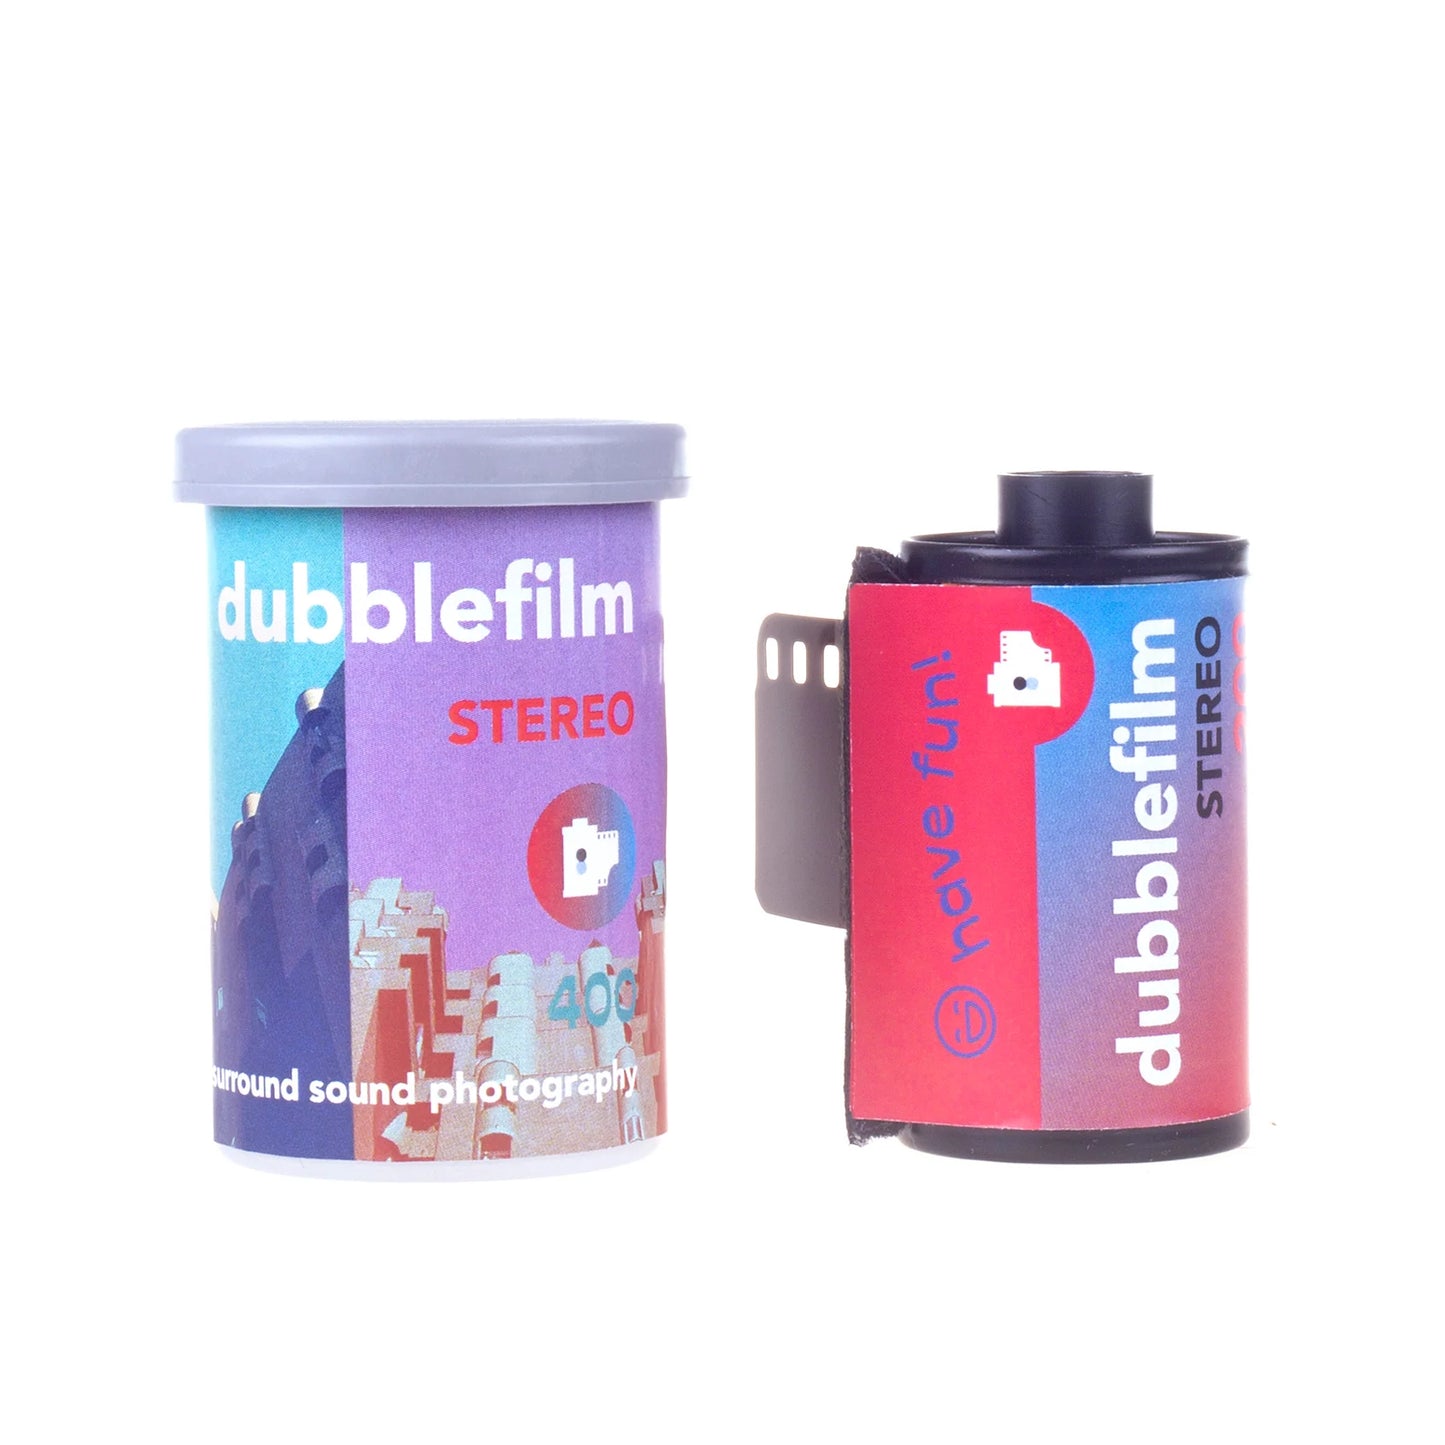 Dubblefilm Stereo 400 - 35mm